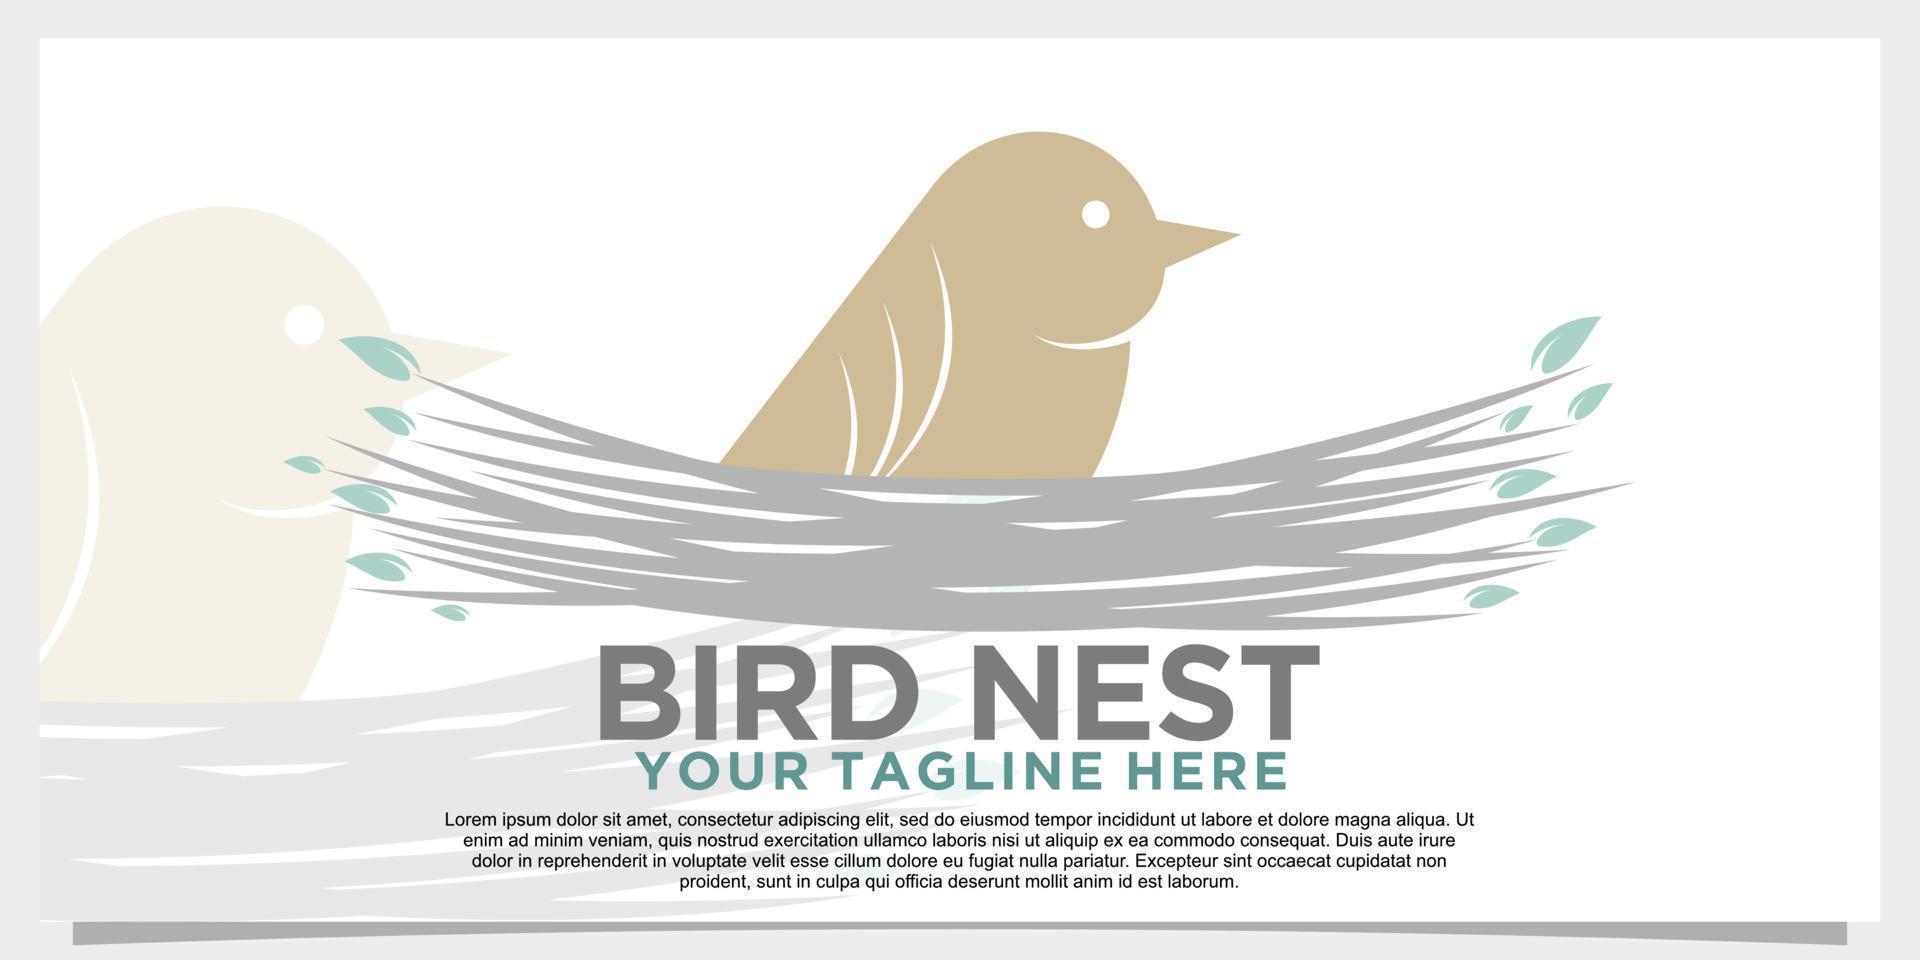 design de logotipo de ninho de pássaro com vetor premium de conceito criativo